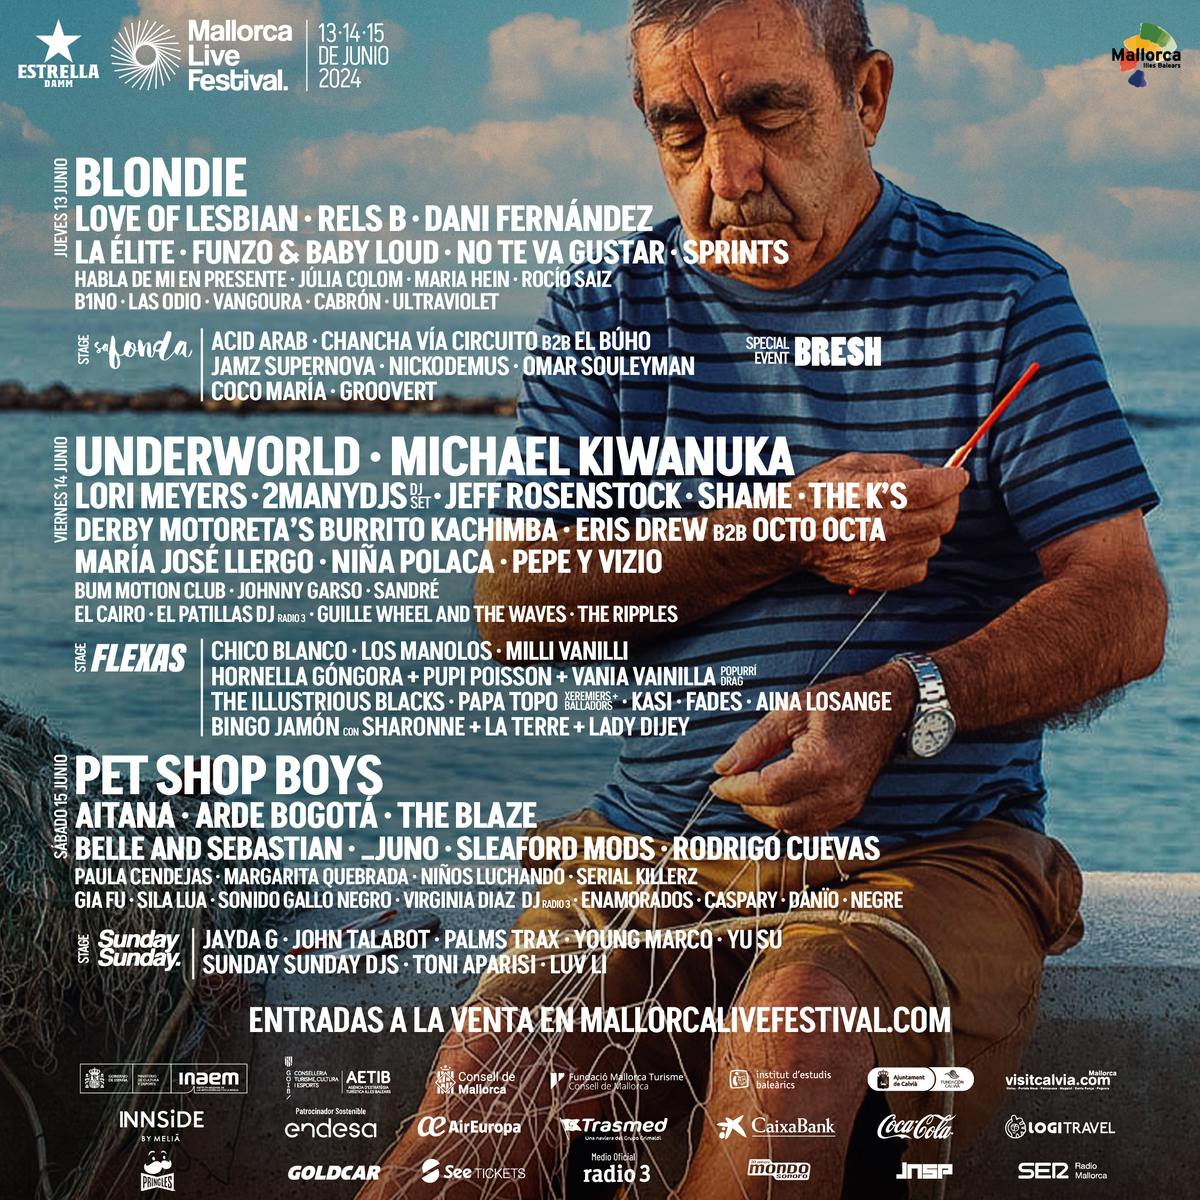 Bilhete de 2 dias (quinta e sábado) Mallorca Live Festival 2024